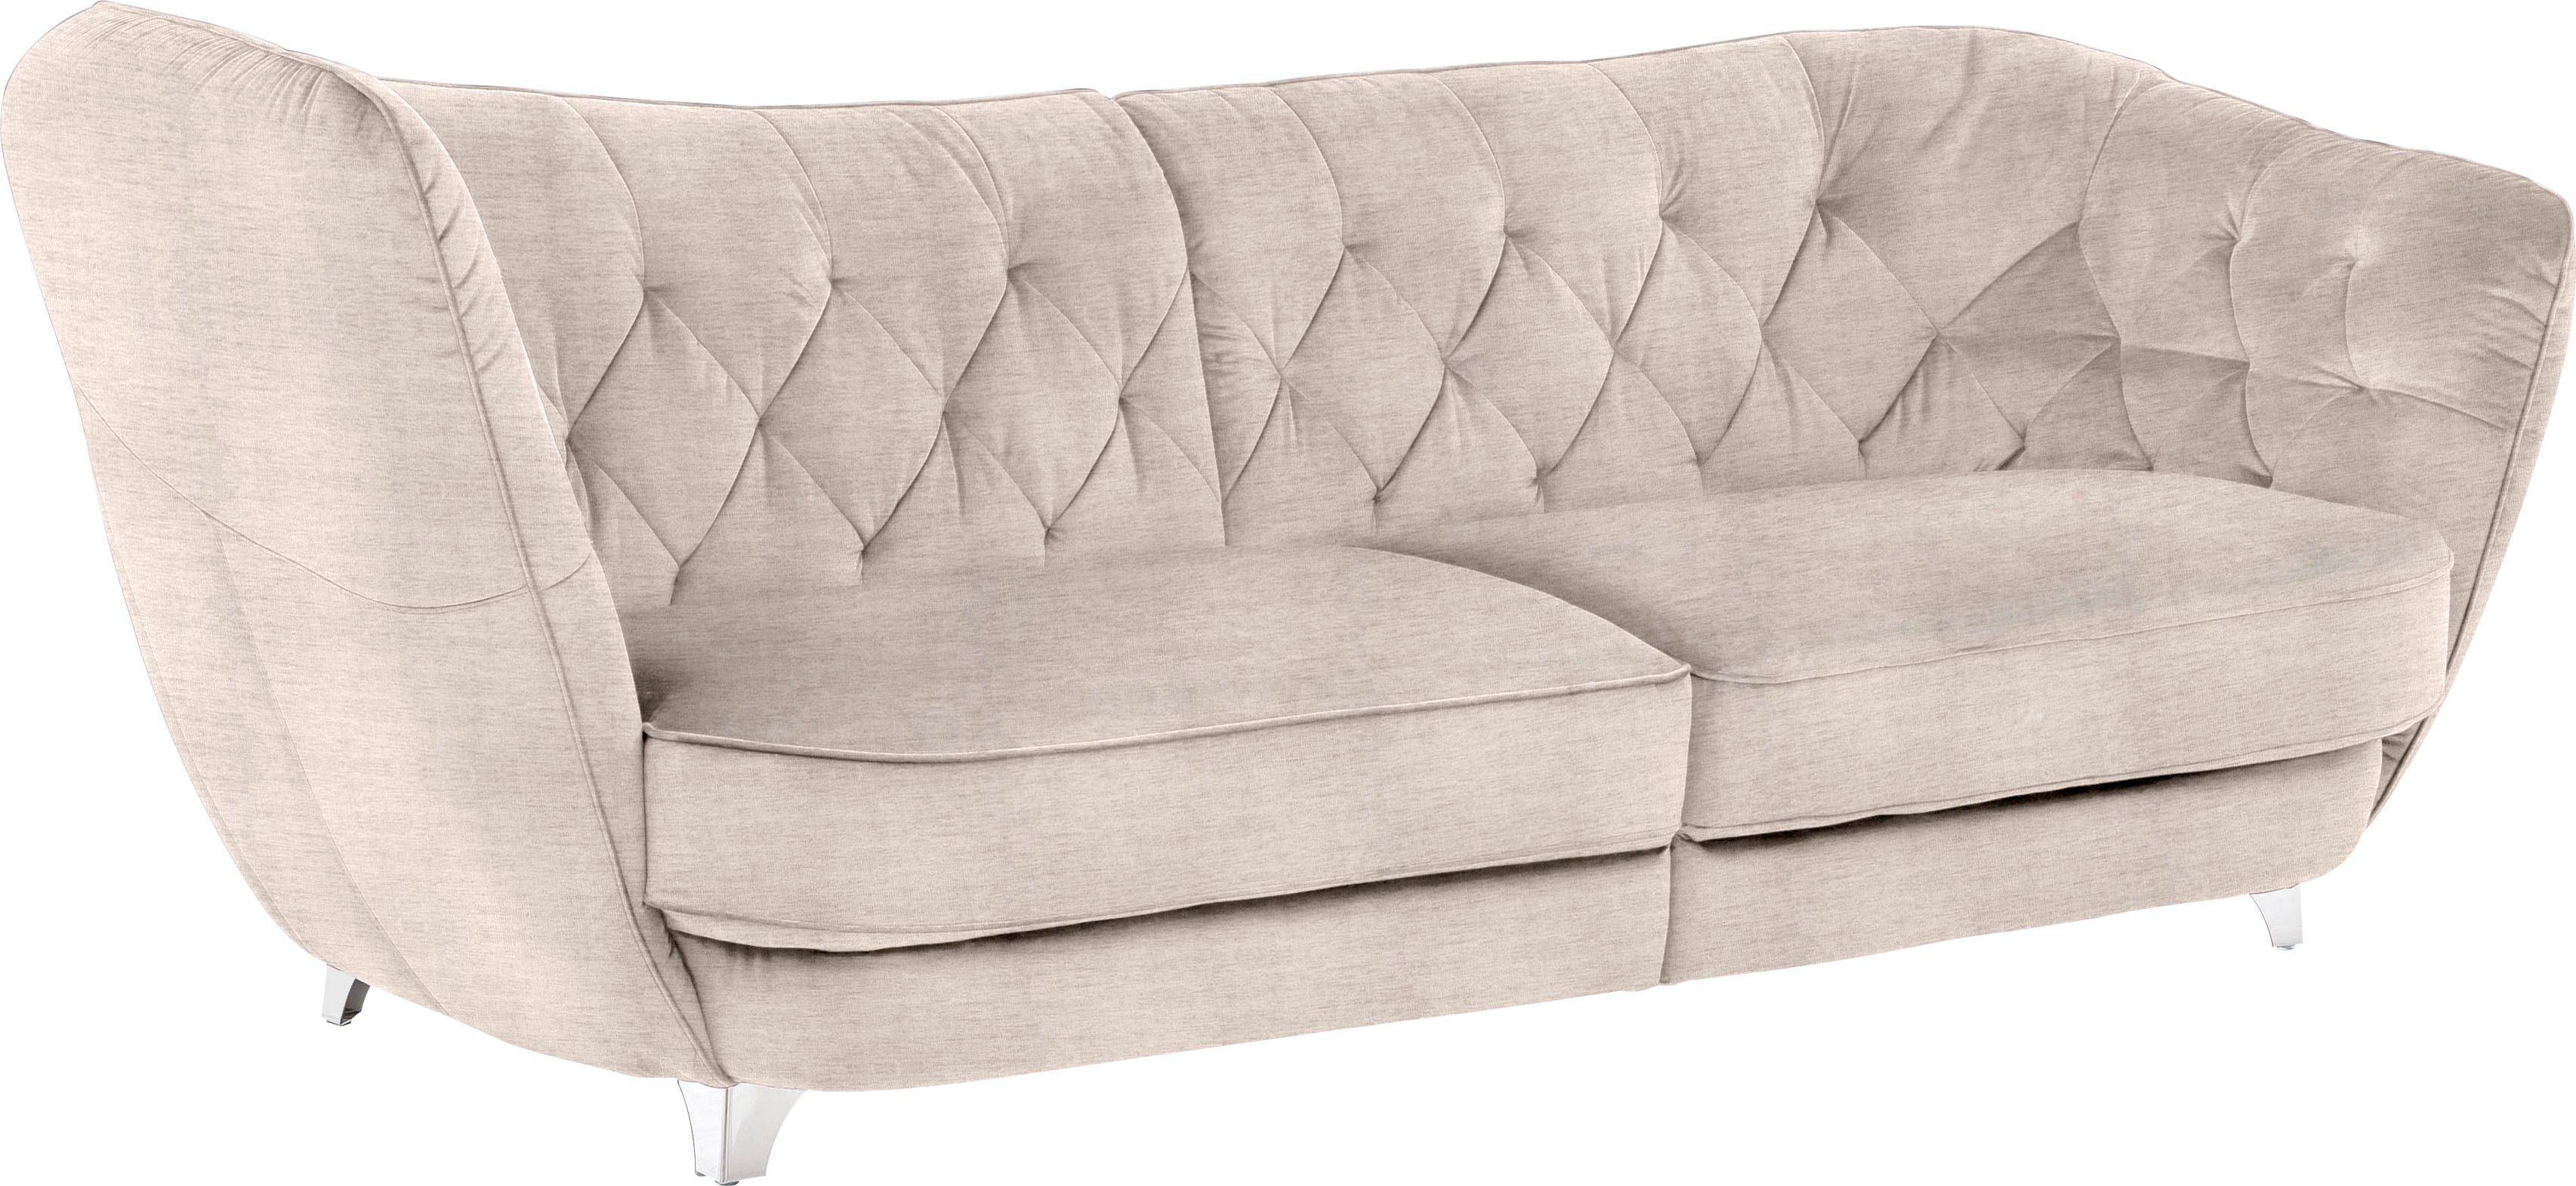 Leonique Big-Sofa Cordelle online kaufen | OTTO